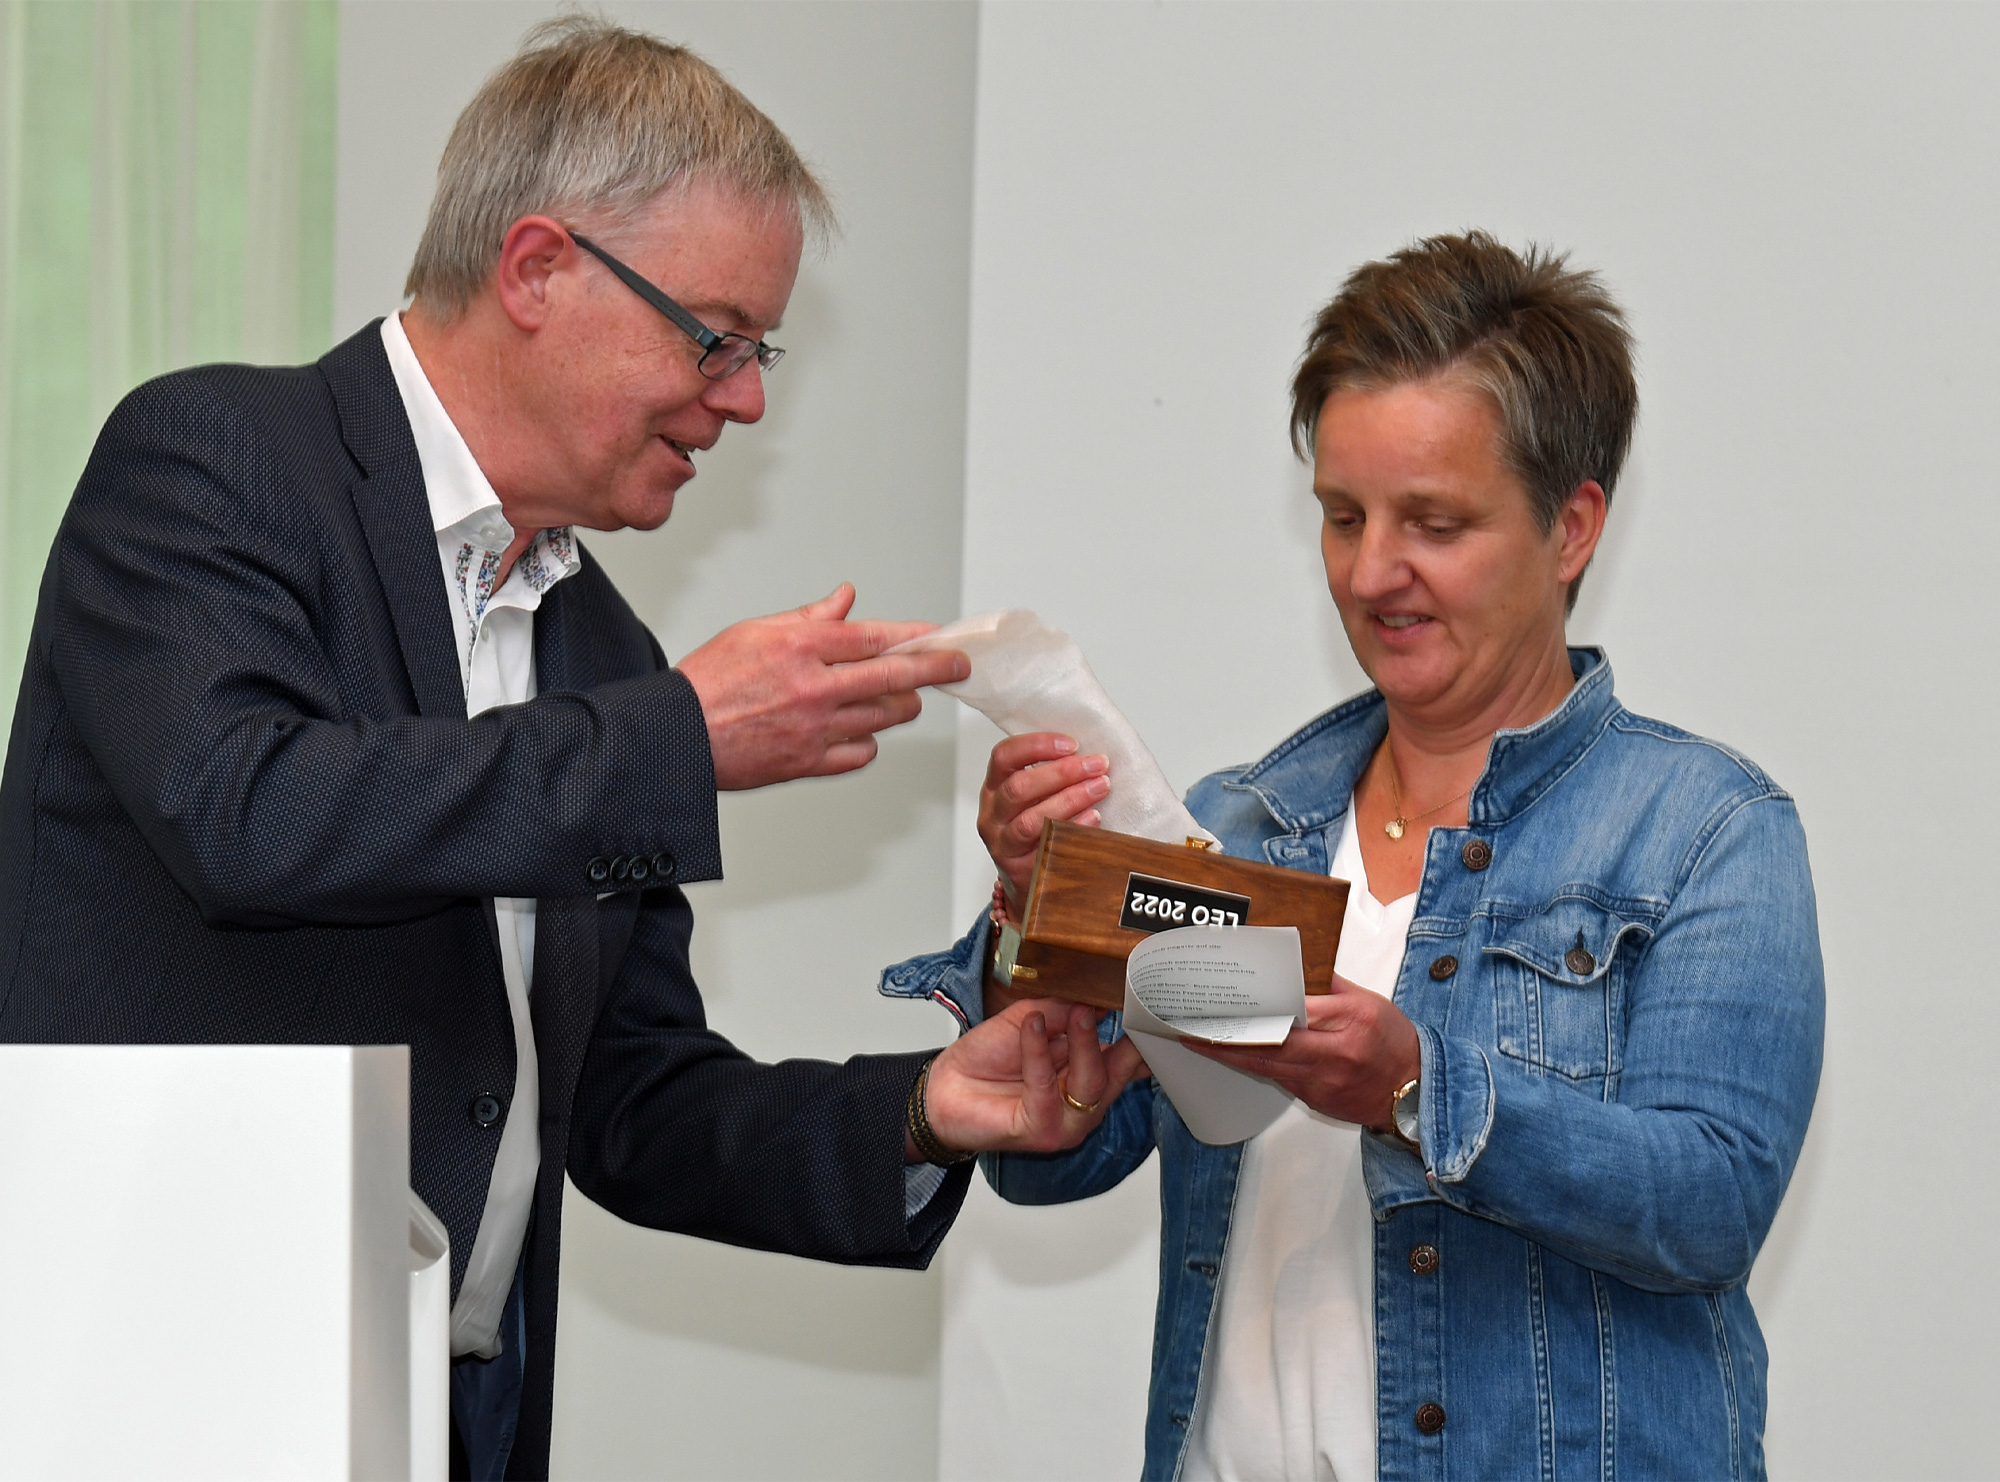 Wir2@home gewinnt den zweiten Preis den Sandra Kluge entgegennimmt. Foto: Wolfgang Hesse / Erzbistum Paderborn